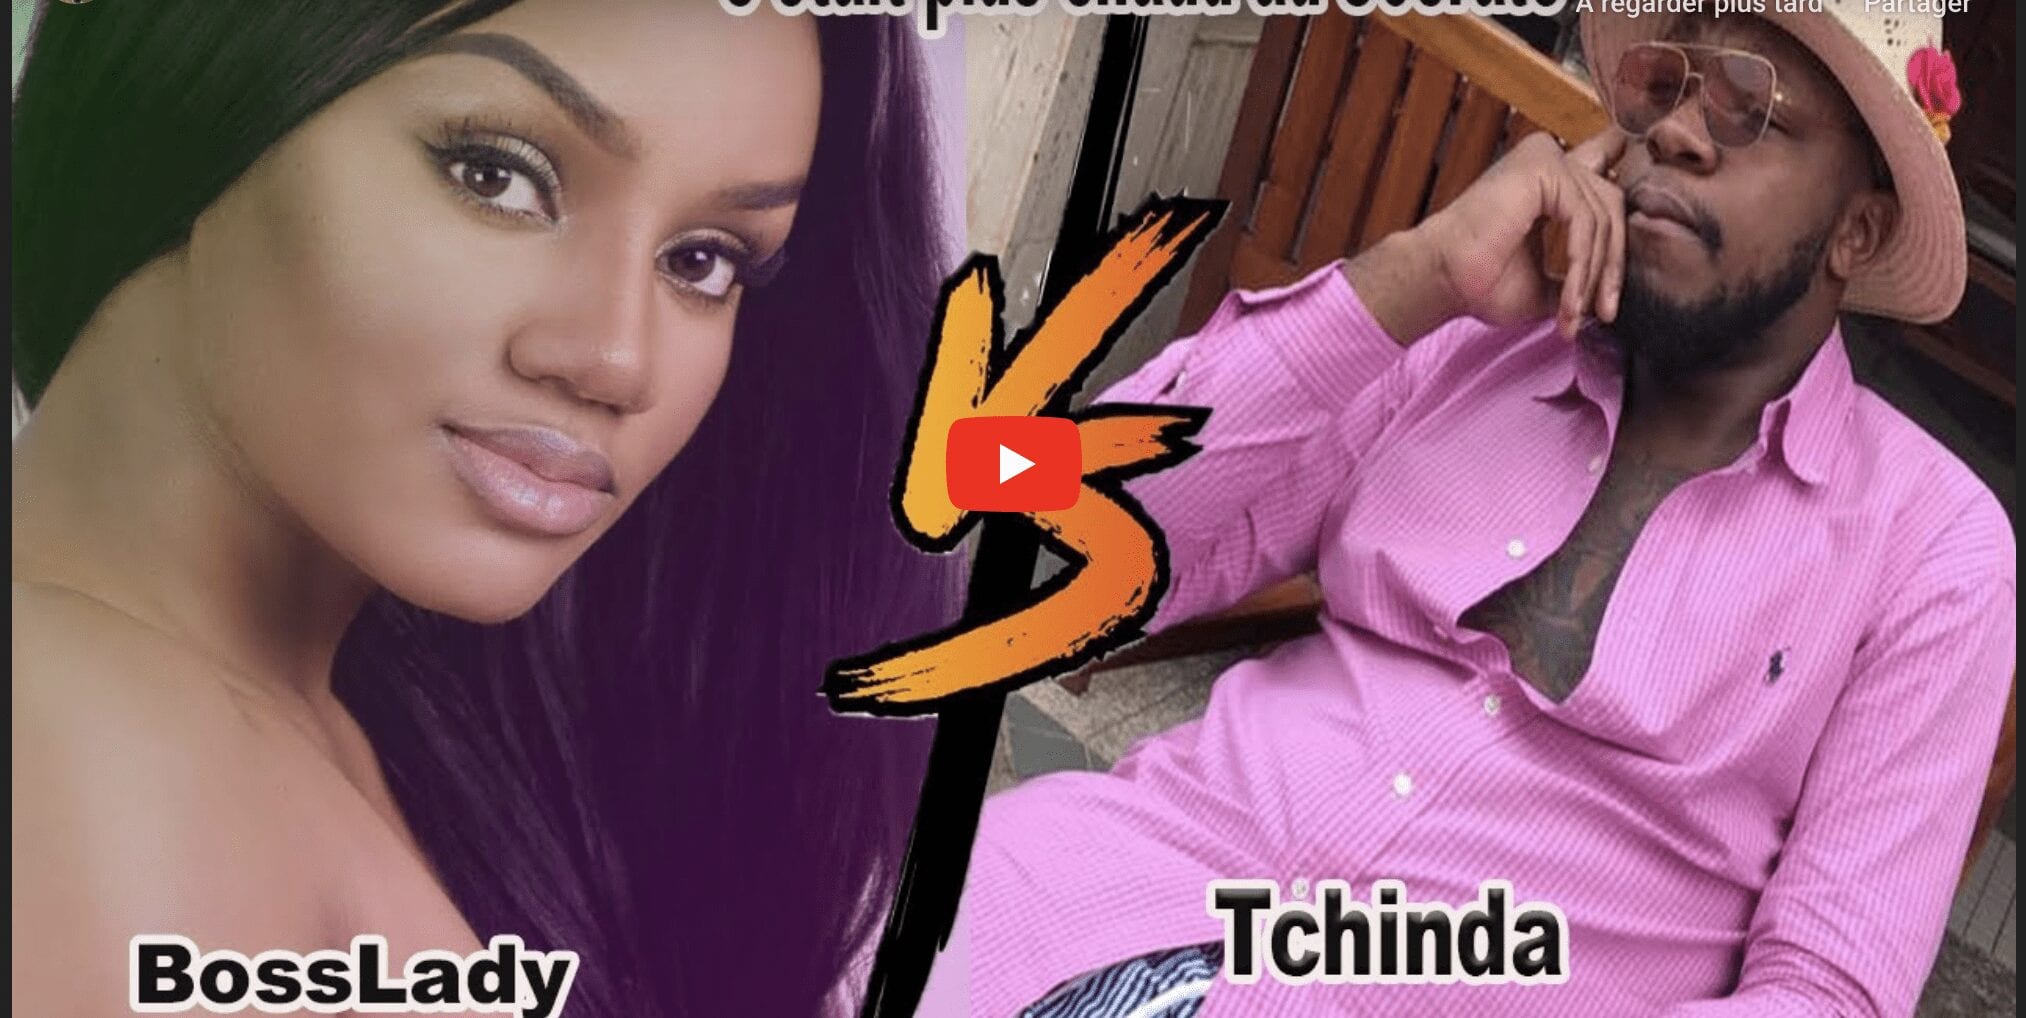 Vidéo : Ce Youtubeur Commente L’altercation De Nathalie Koah Et Son Tchinda